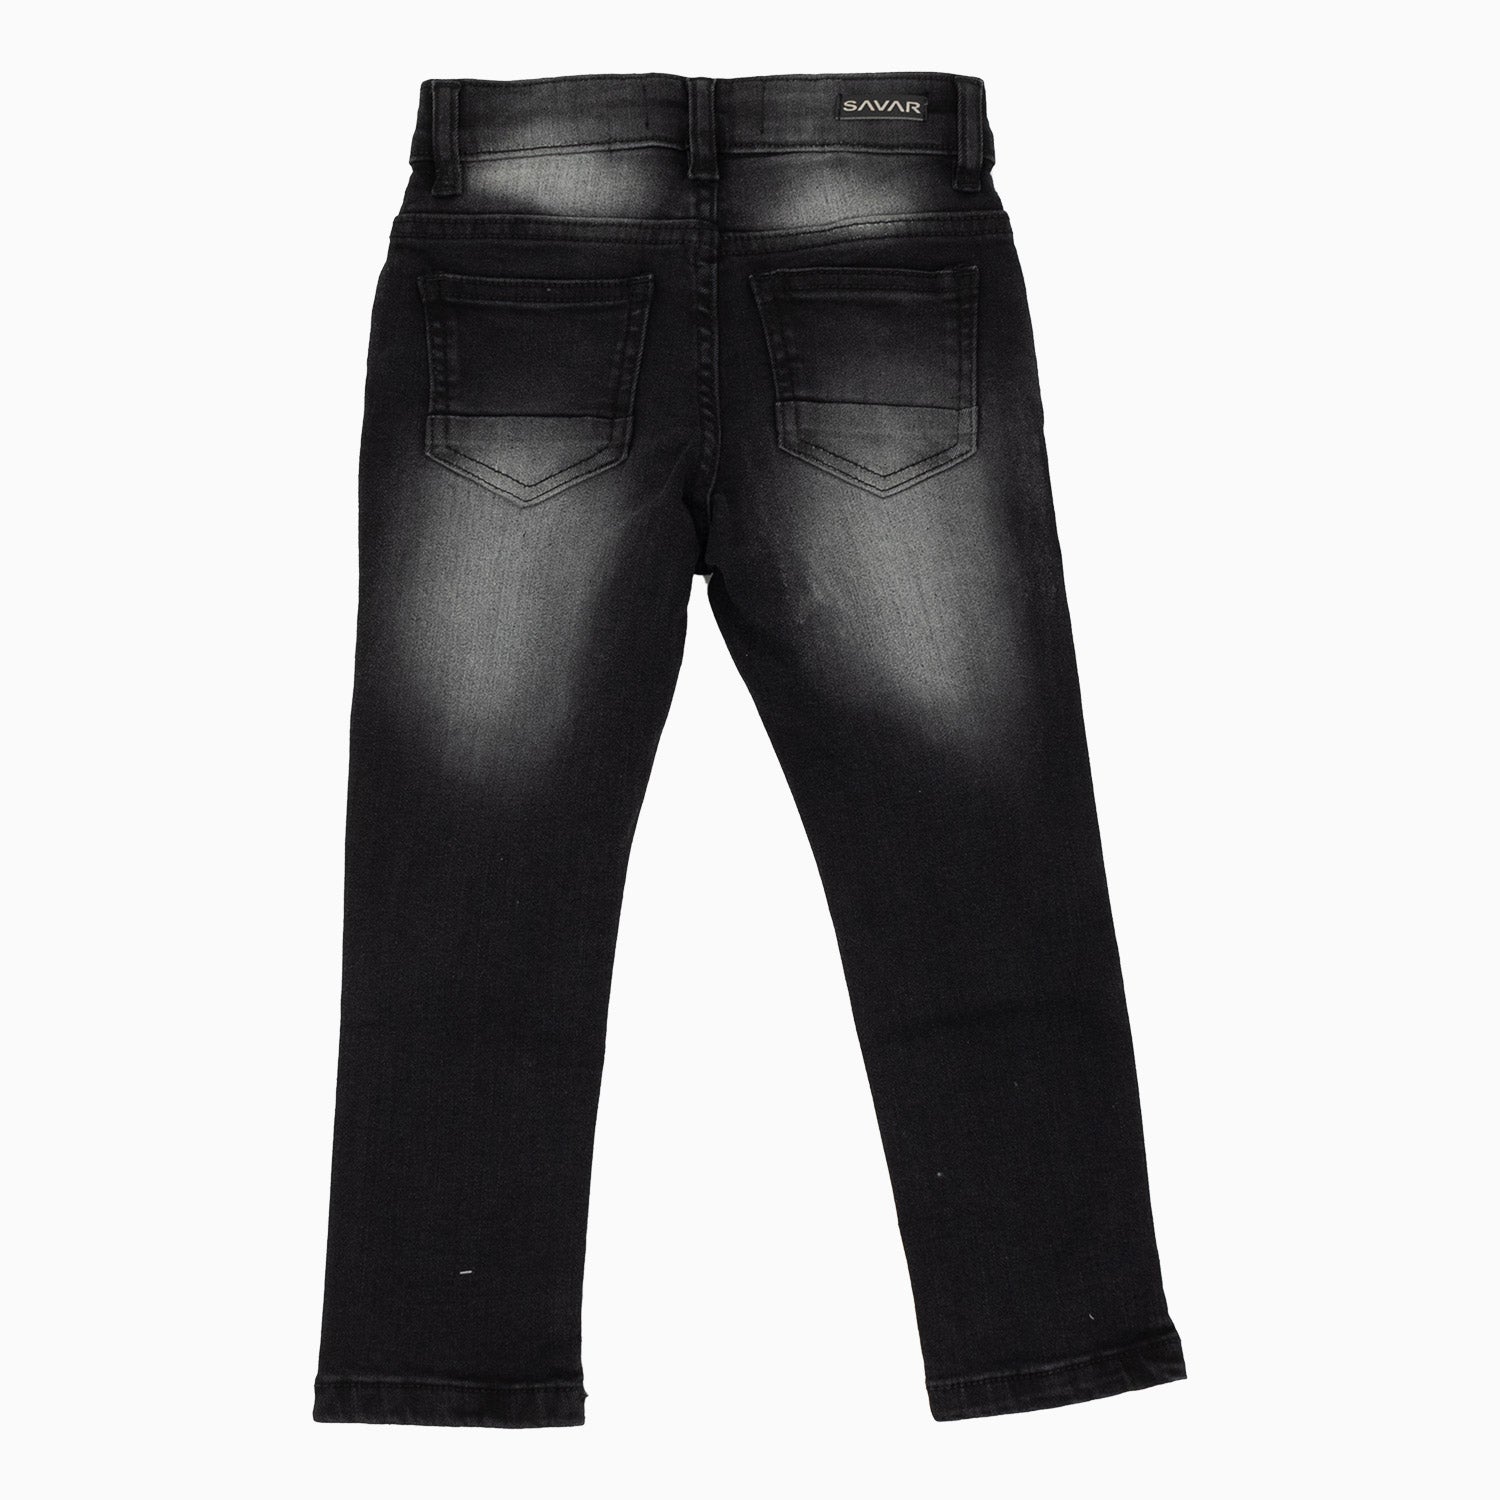 Kid's Savar Black Wash Slim Denim Ripped Jeans Pant